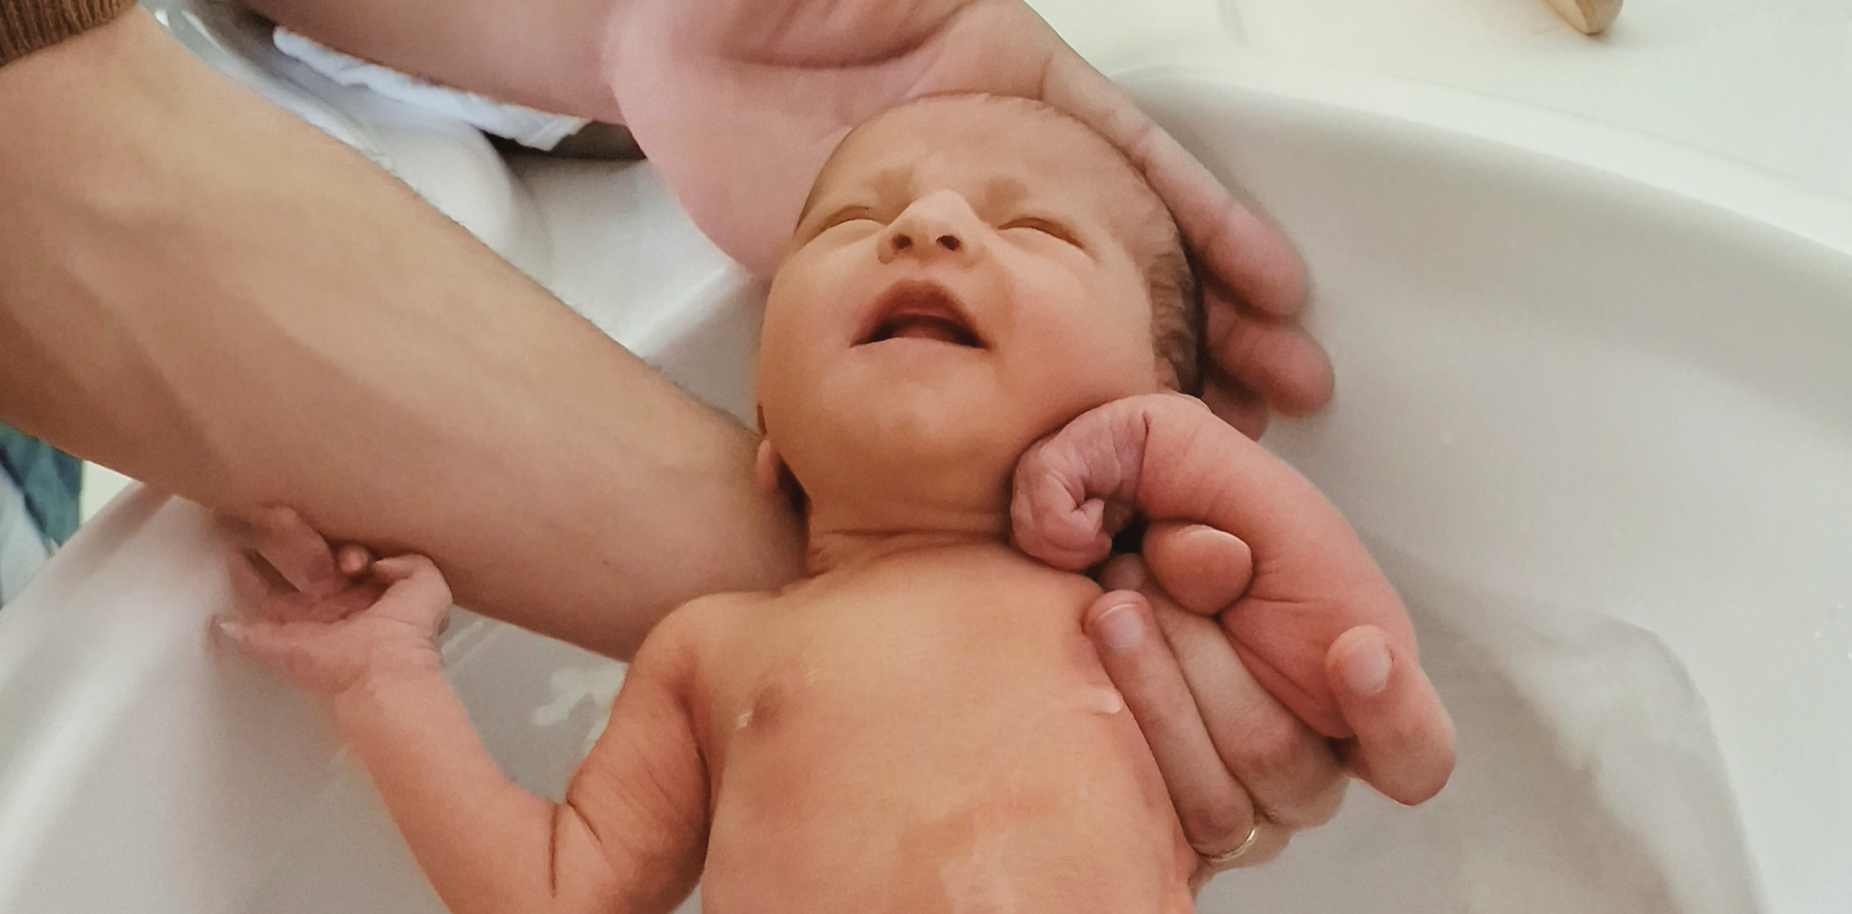 Bébé 1er bain maternité, nouveau né petit poids, fille, bain à la maternité J3, Céline Caillau, photo du bain de bébé